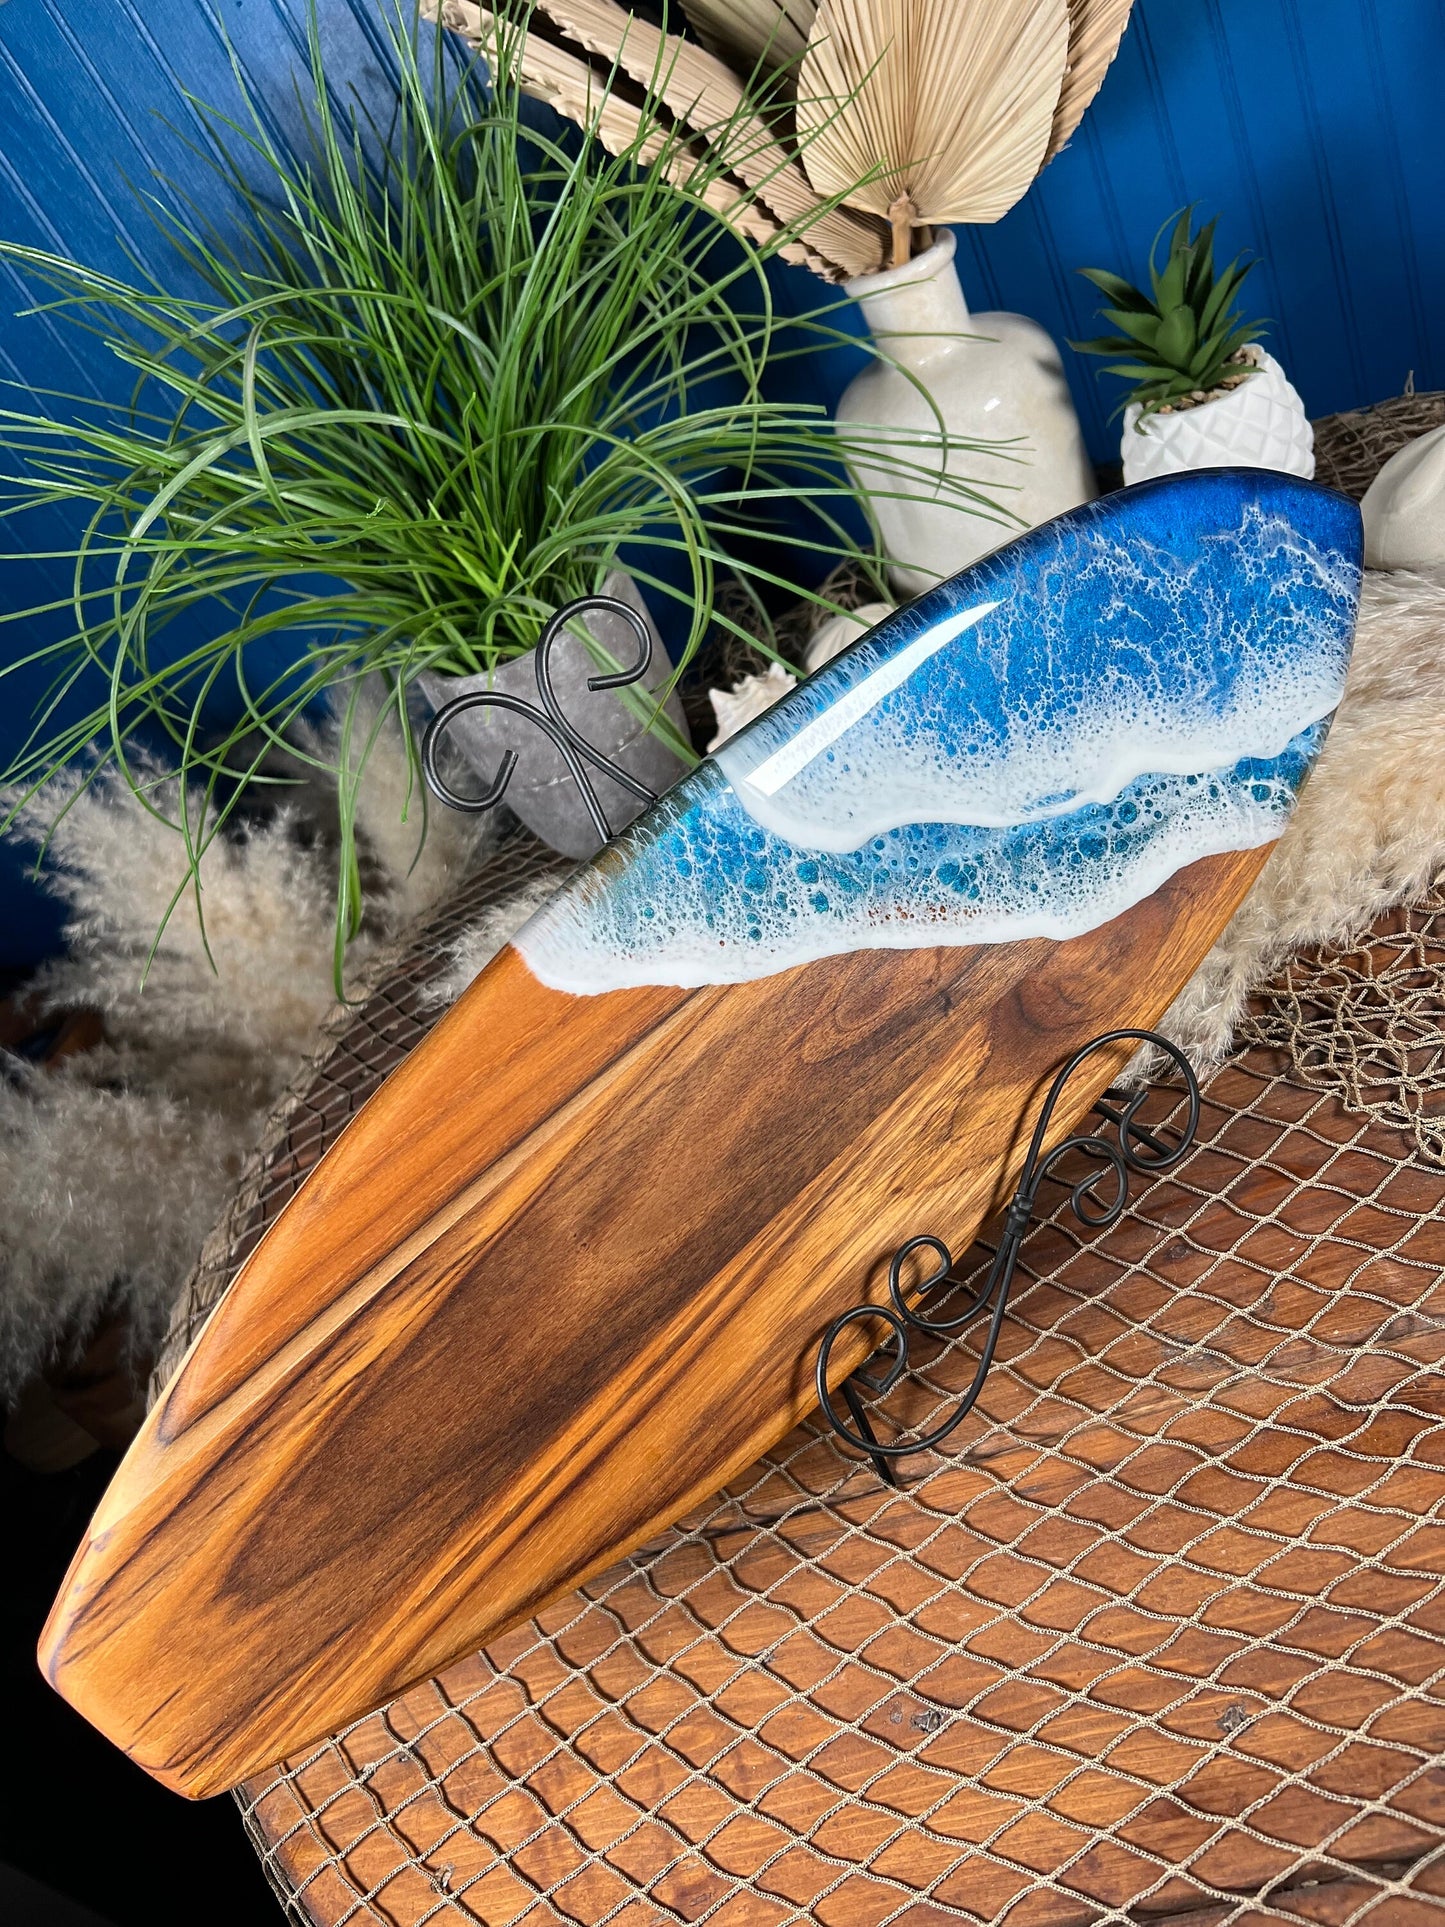 Teak Ocean Waves Resin Surfboard, Serving Tray, Charcuterie Board, Wall Art